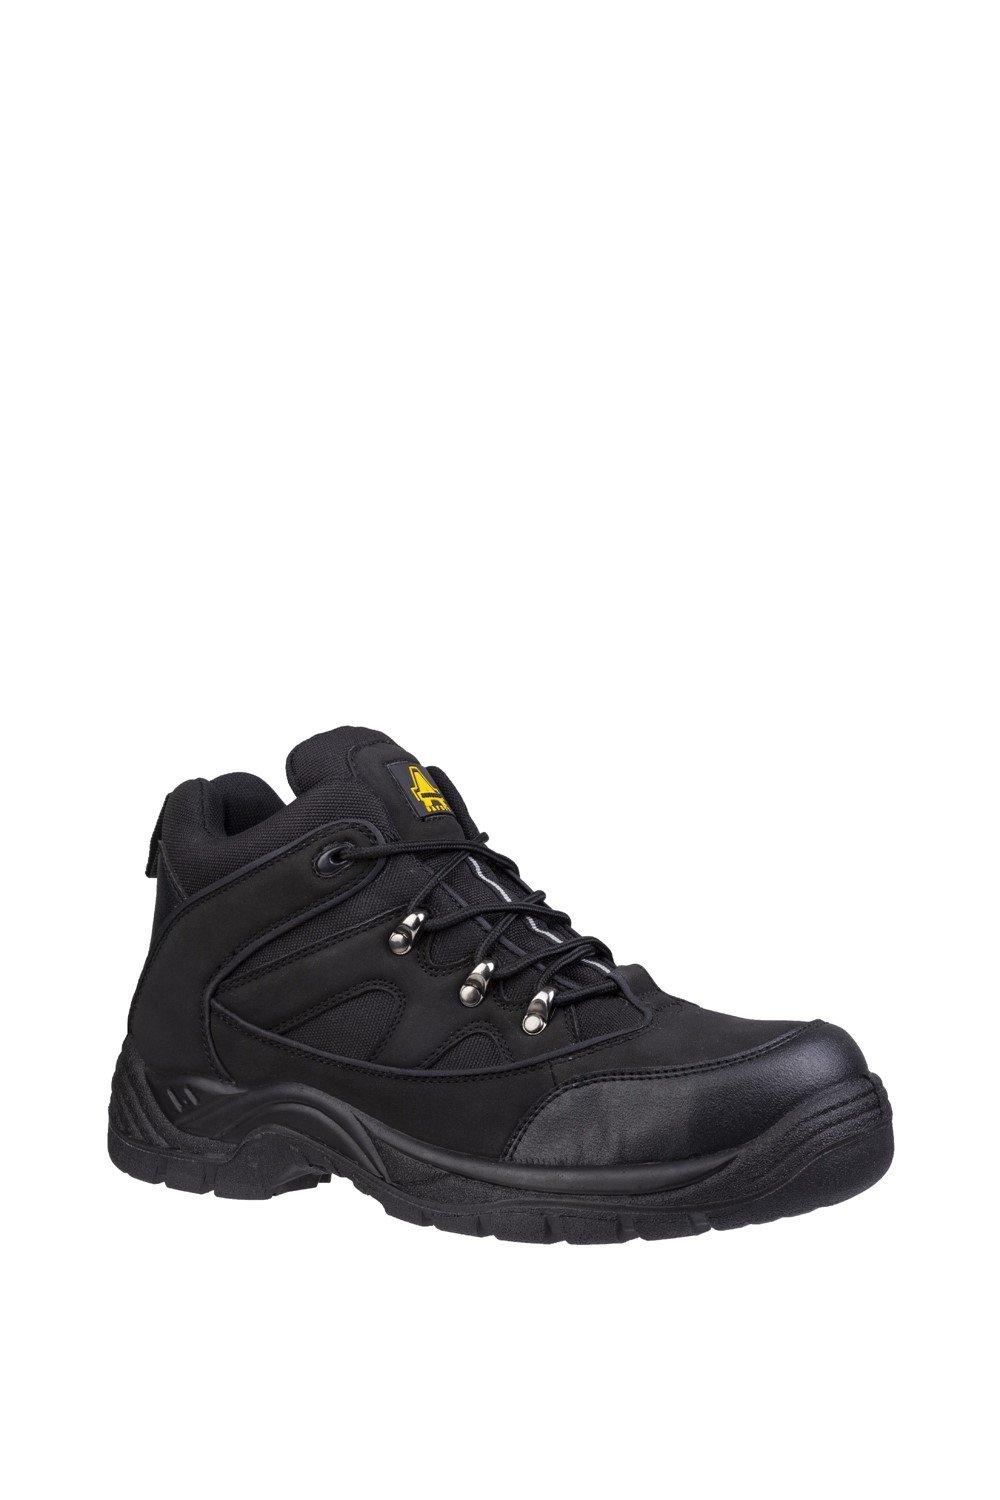 Защитные ботинки 'FS151' Amblers Safety, черный